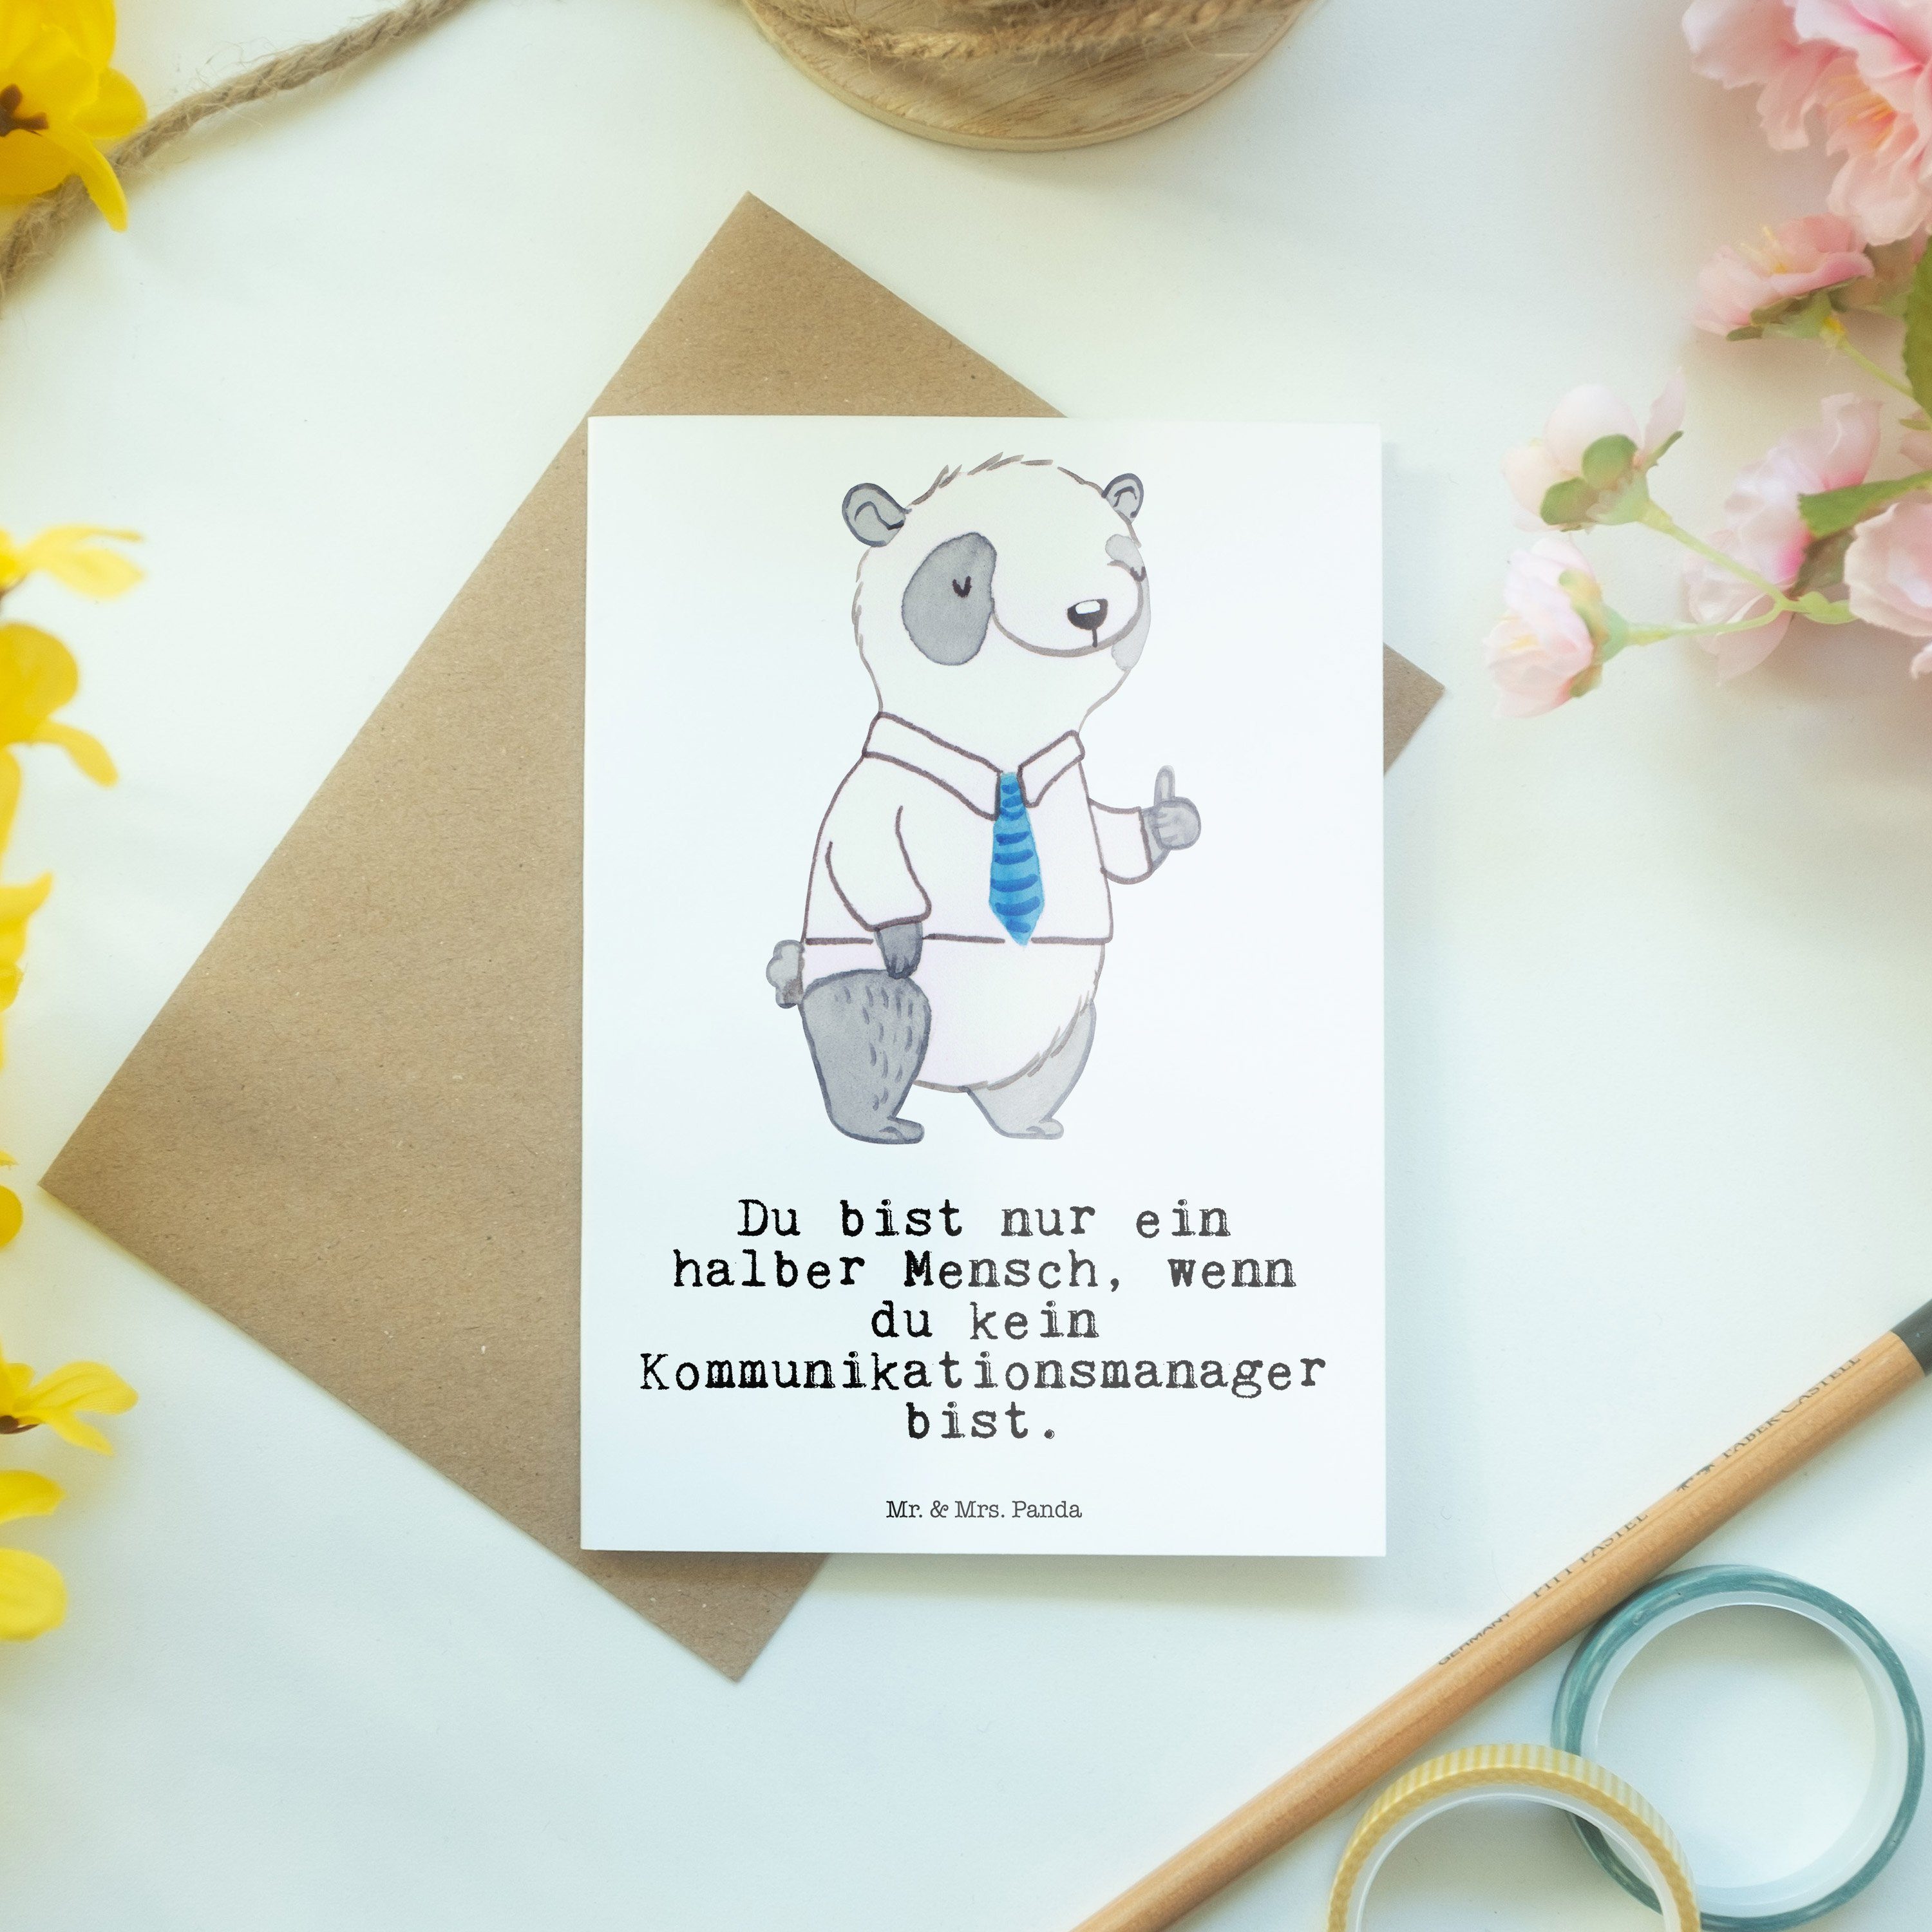 Panda mit Herz mana Geschenk, Kommunikationsmanager Mr. - - communications & Grußkarte Mrs. Weiß